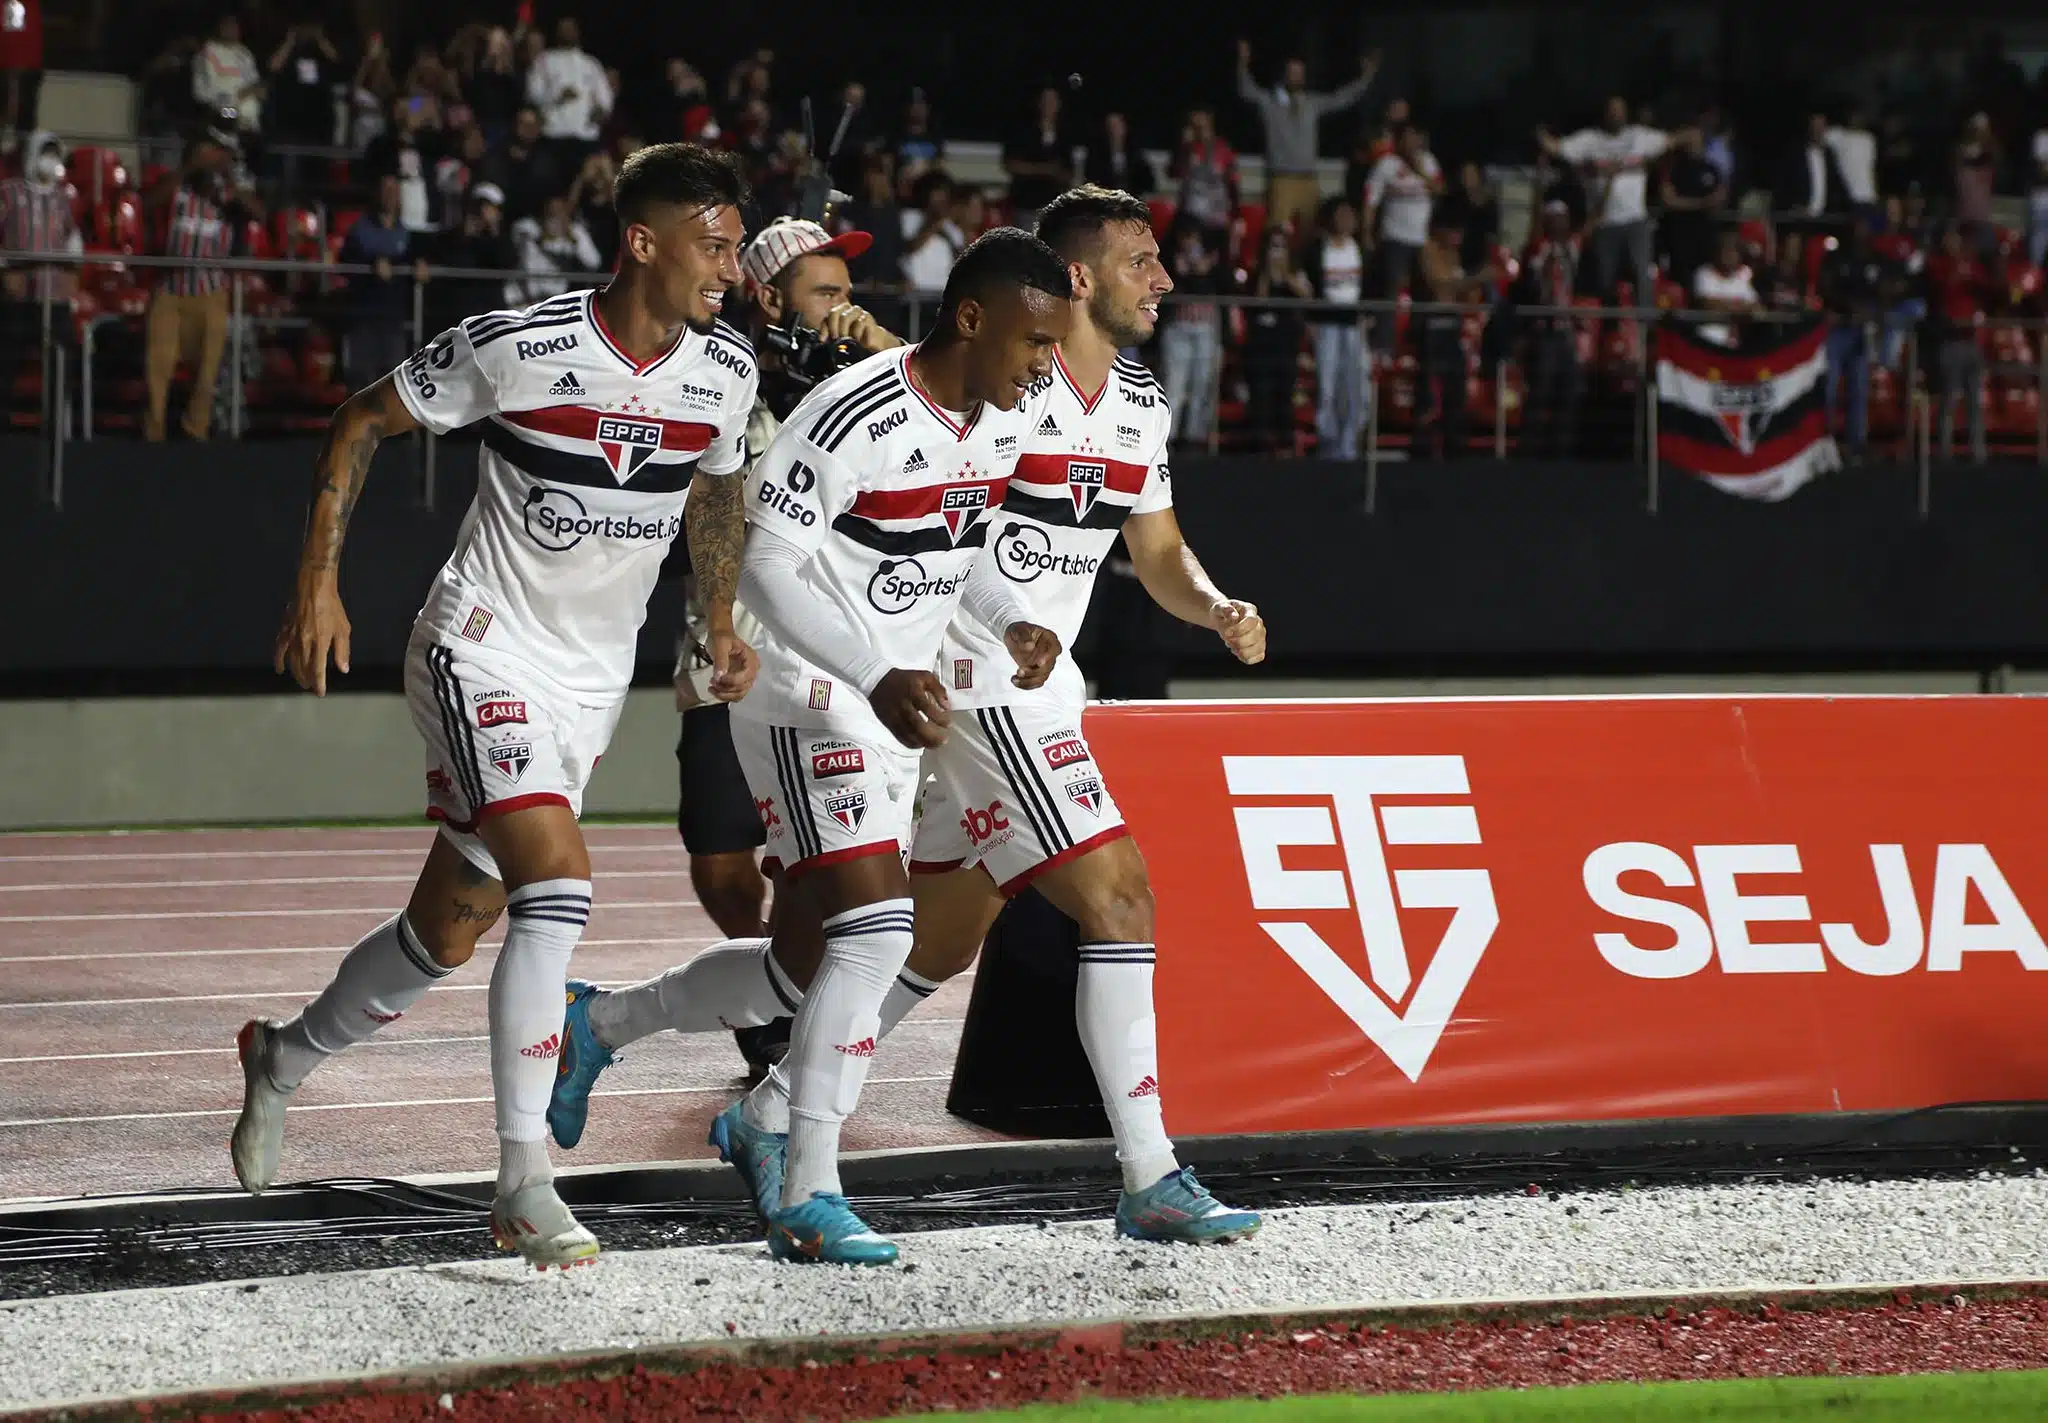 Há quase um ano sem marcar gols, ex-São Paulo sofre eliminação histórica na Concachampions